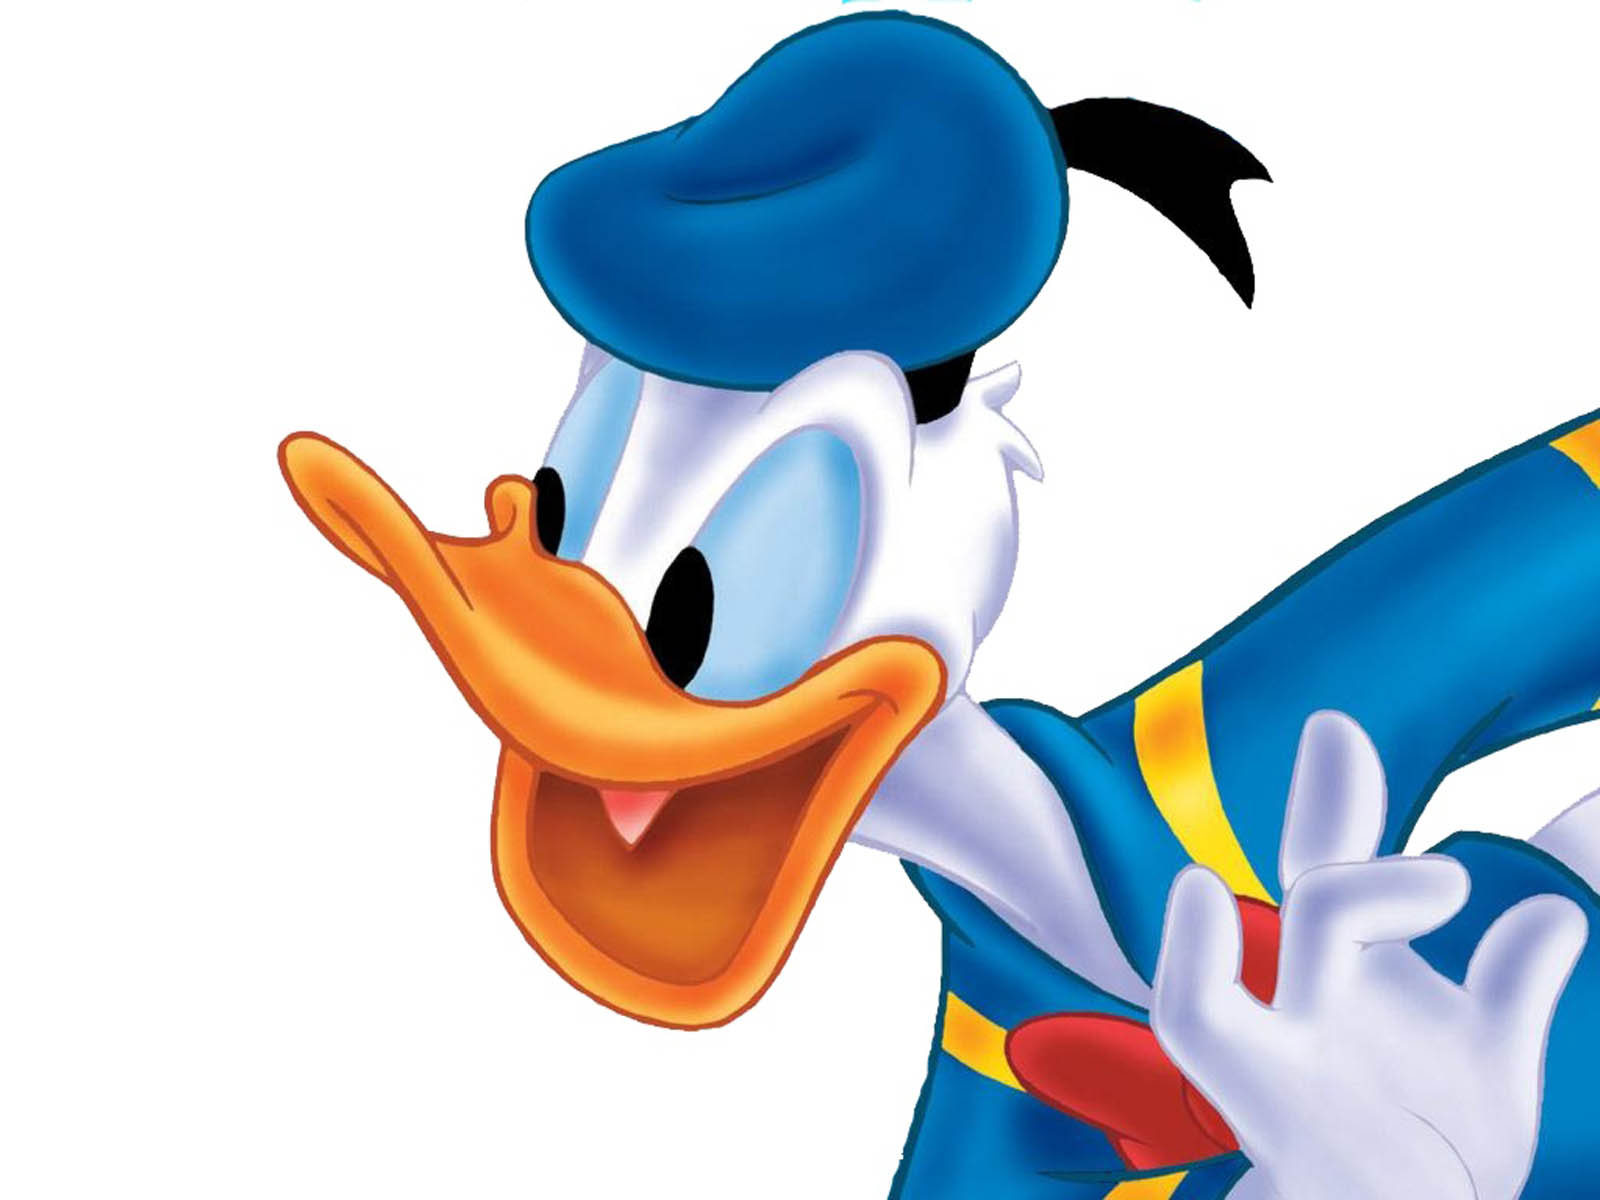 Cartoons Donald Duck Wallpaper Windows - Donald Duck - HD Wallpaper 